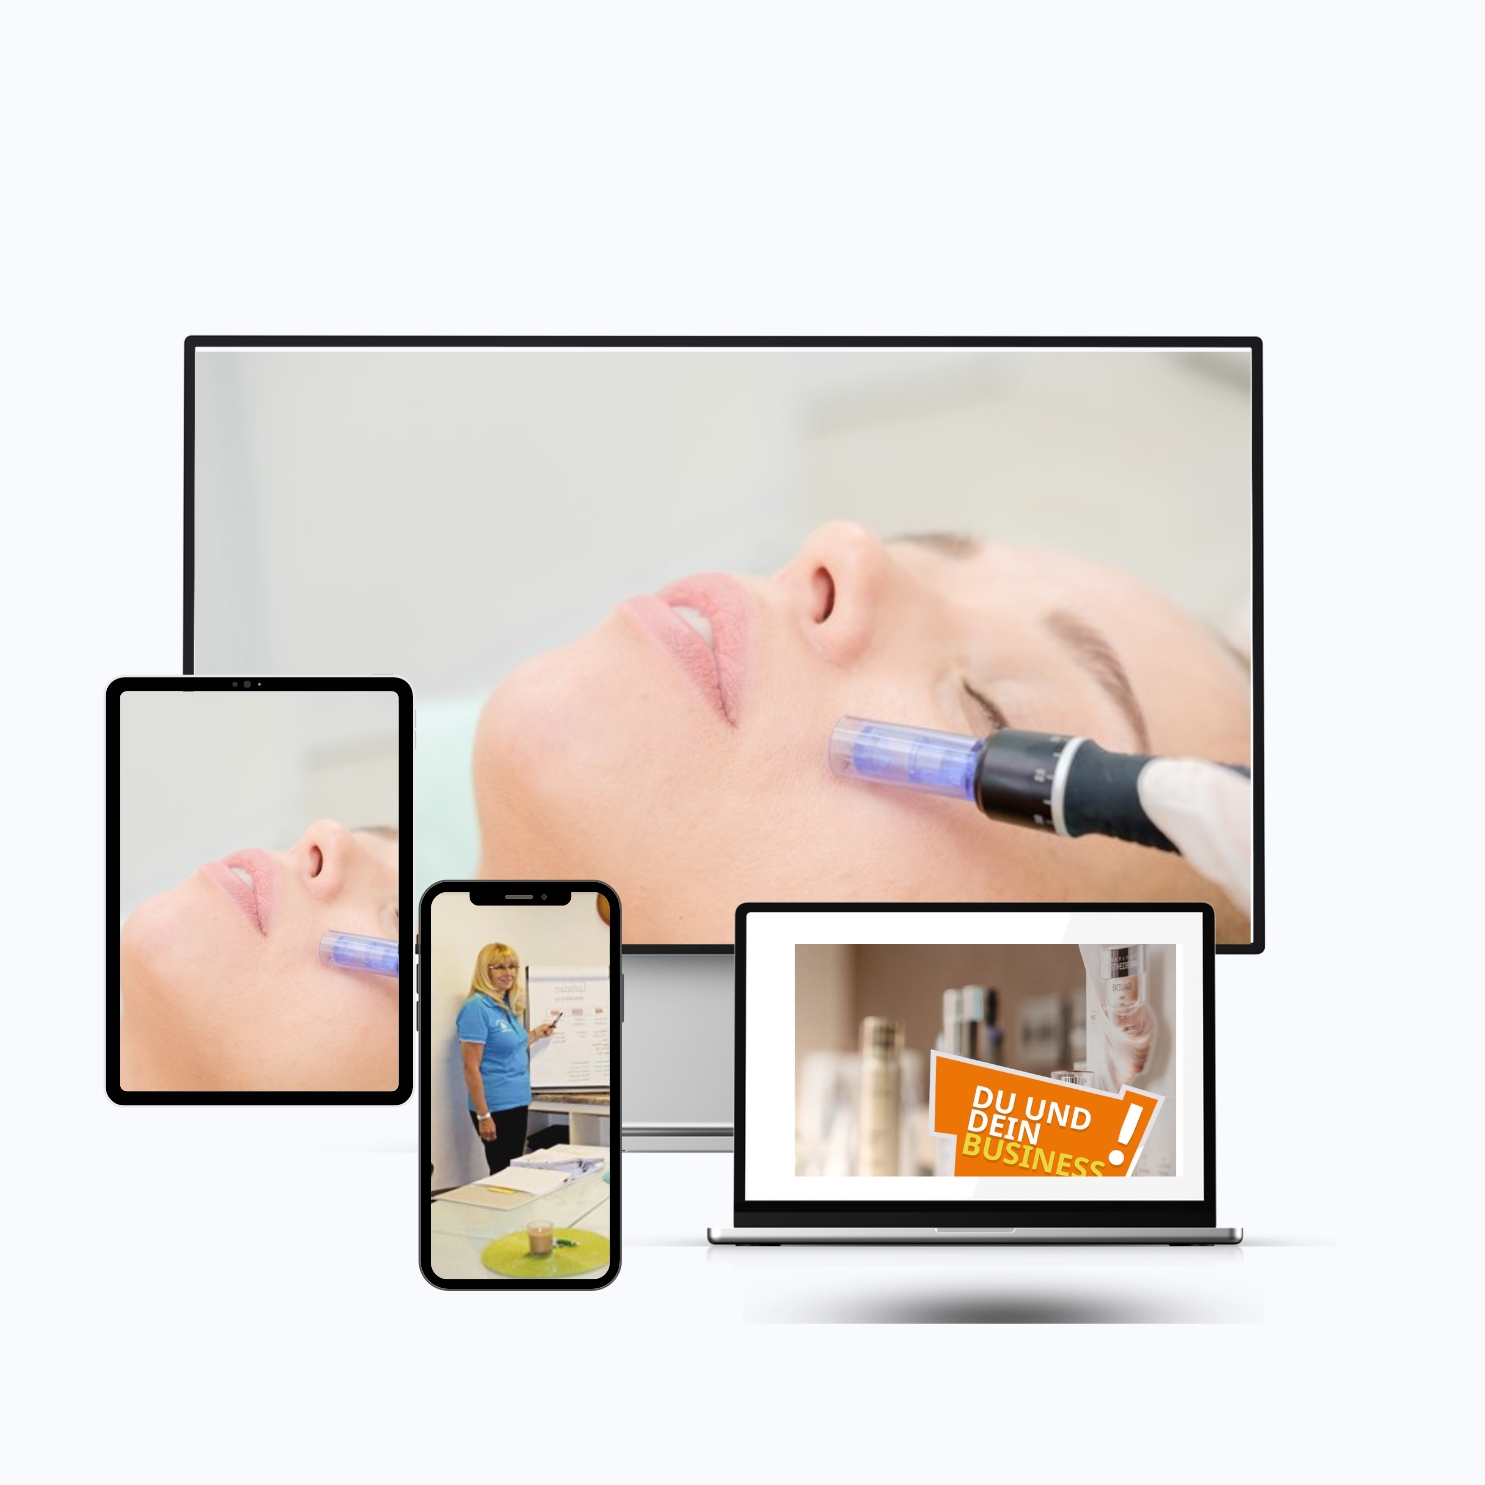 Microneedling - Ausbildung Onlineschulung dks-kosmetikschule